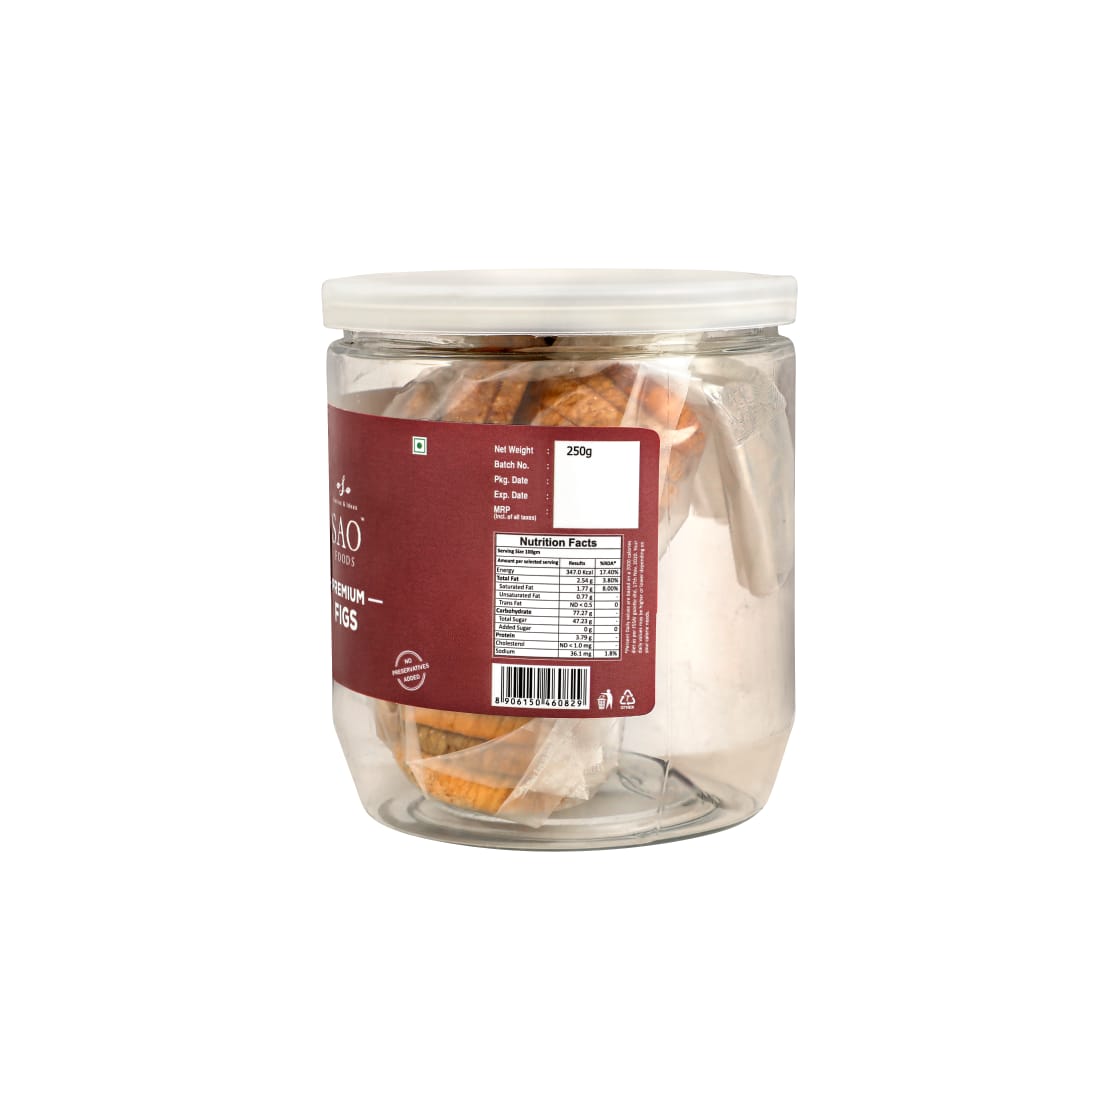 SAO FOODS Premium Jumbo Figs 250 gm | PET Jar with Tin Cap